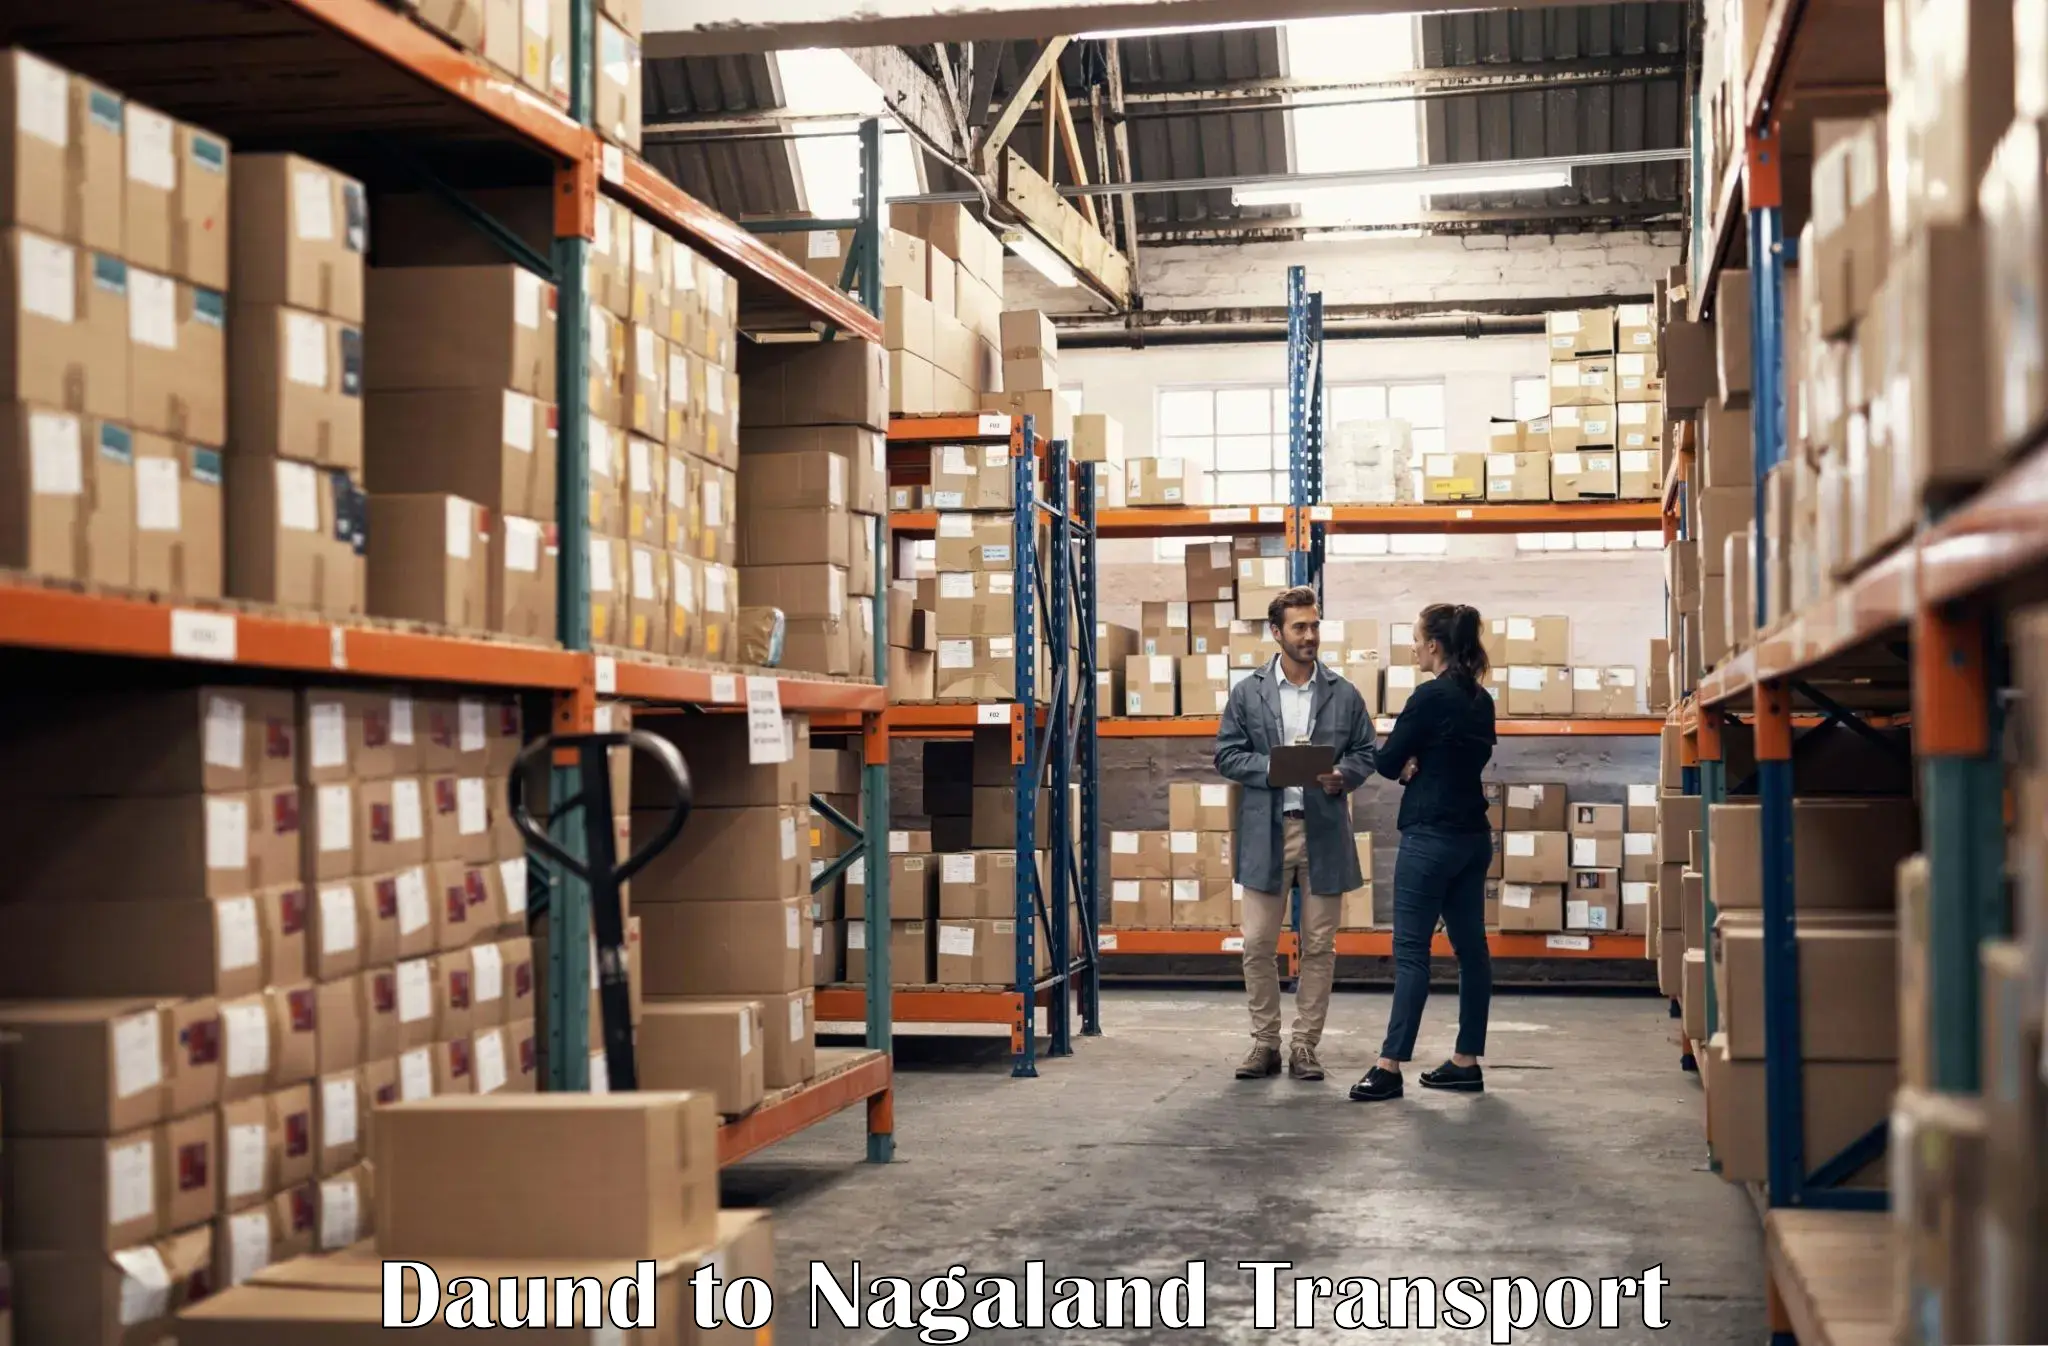 Shipping partner Daund to NIT Nagaland